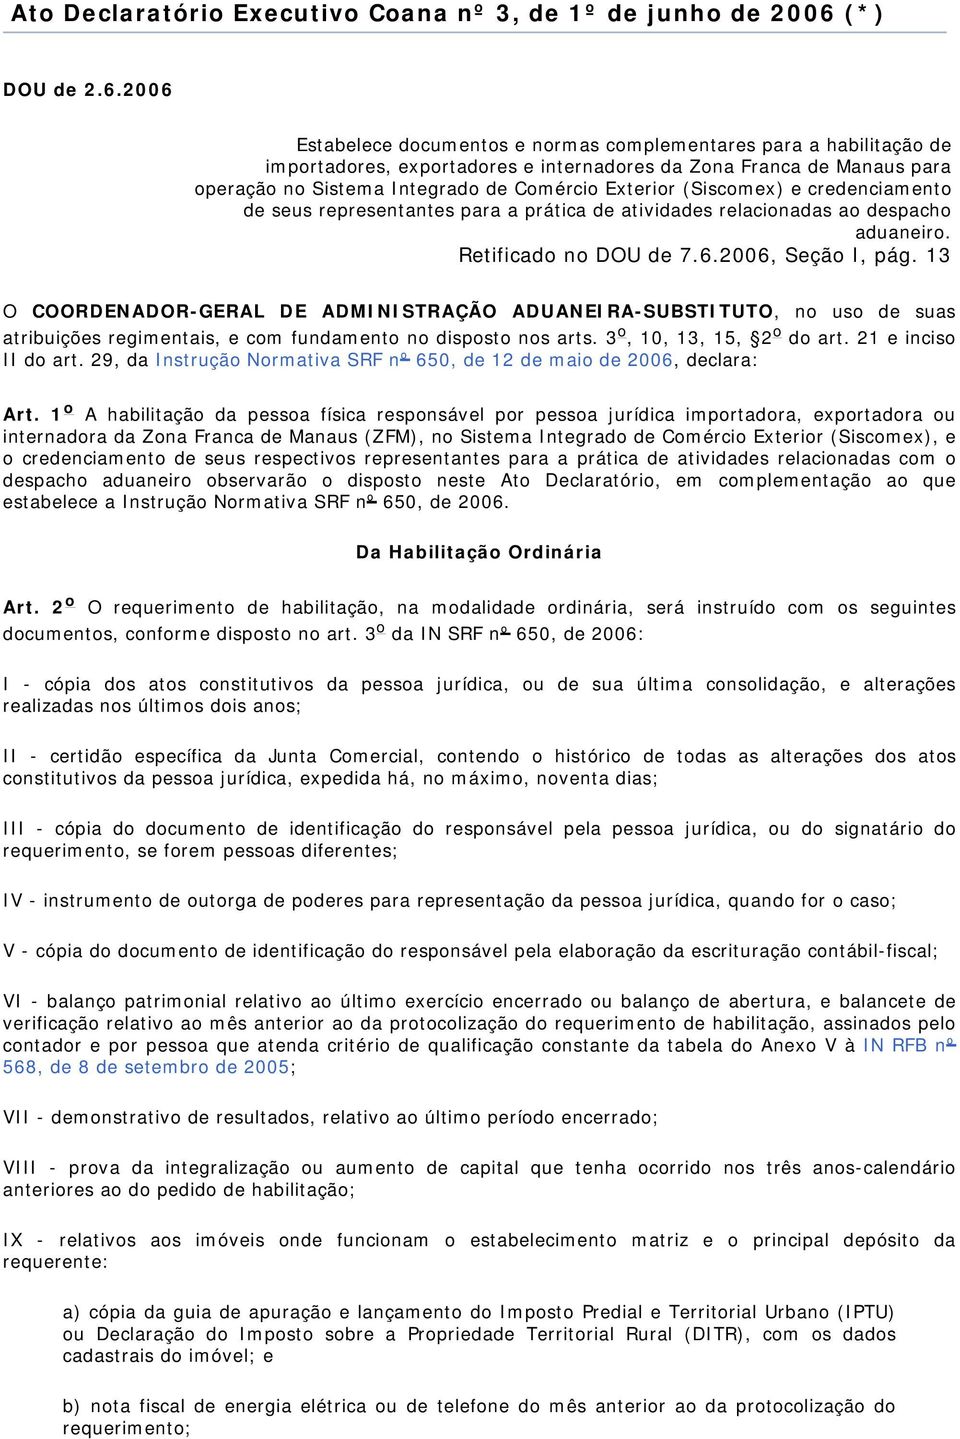 2006 Estabelece documentos e normas complementares para a habilitação de importadores, exportadores e internadores da Zona Franca de Manaus para operação no Sistema Integrado de Comércio Exterior